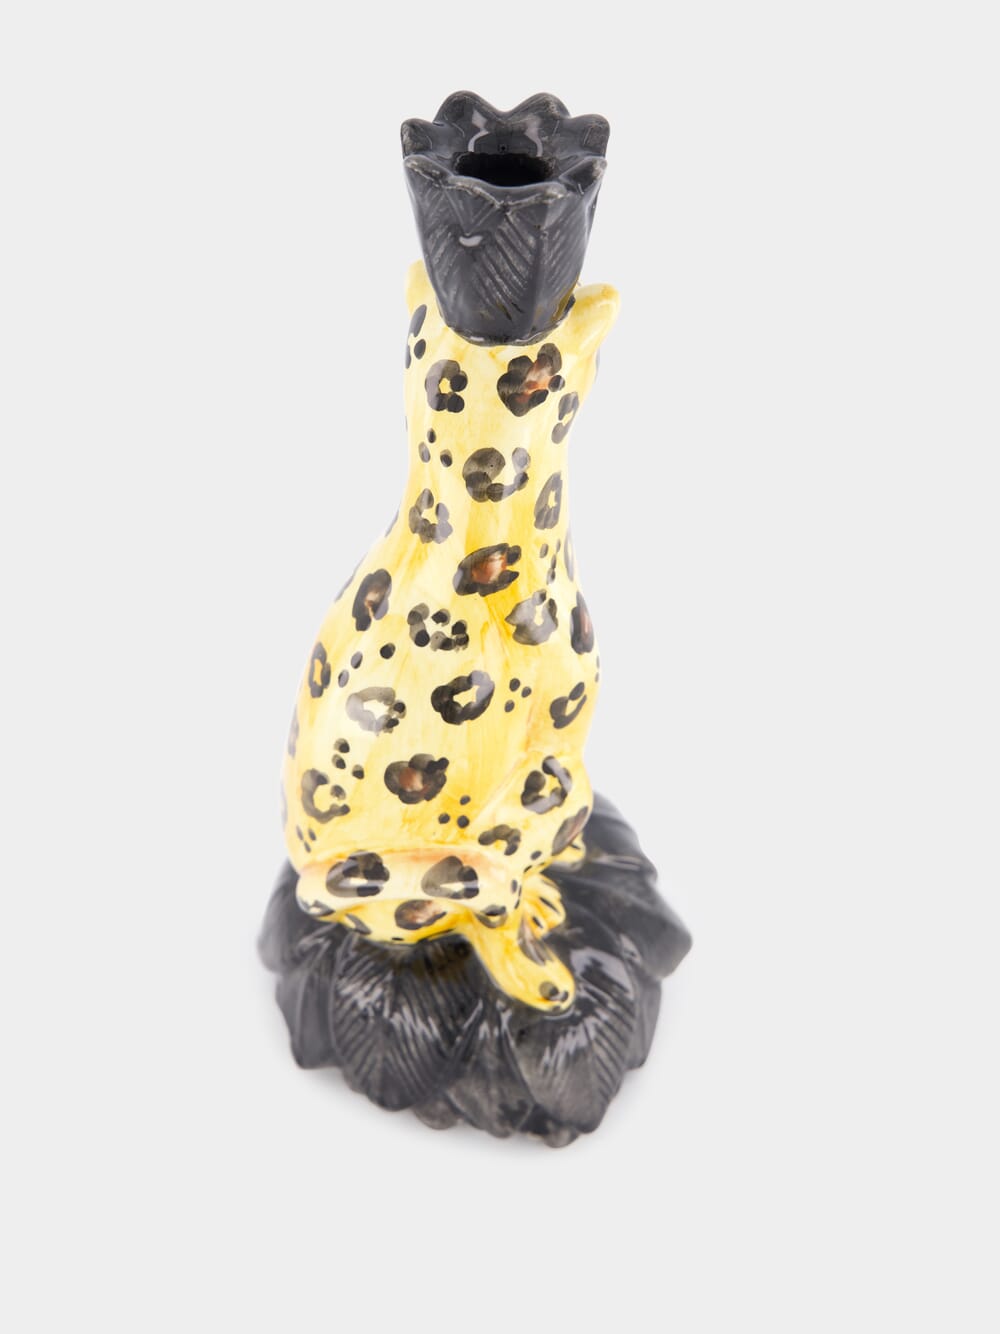 Leopard Candleholder Set